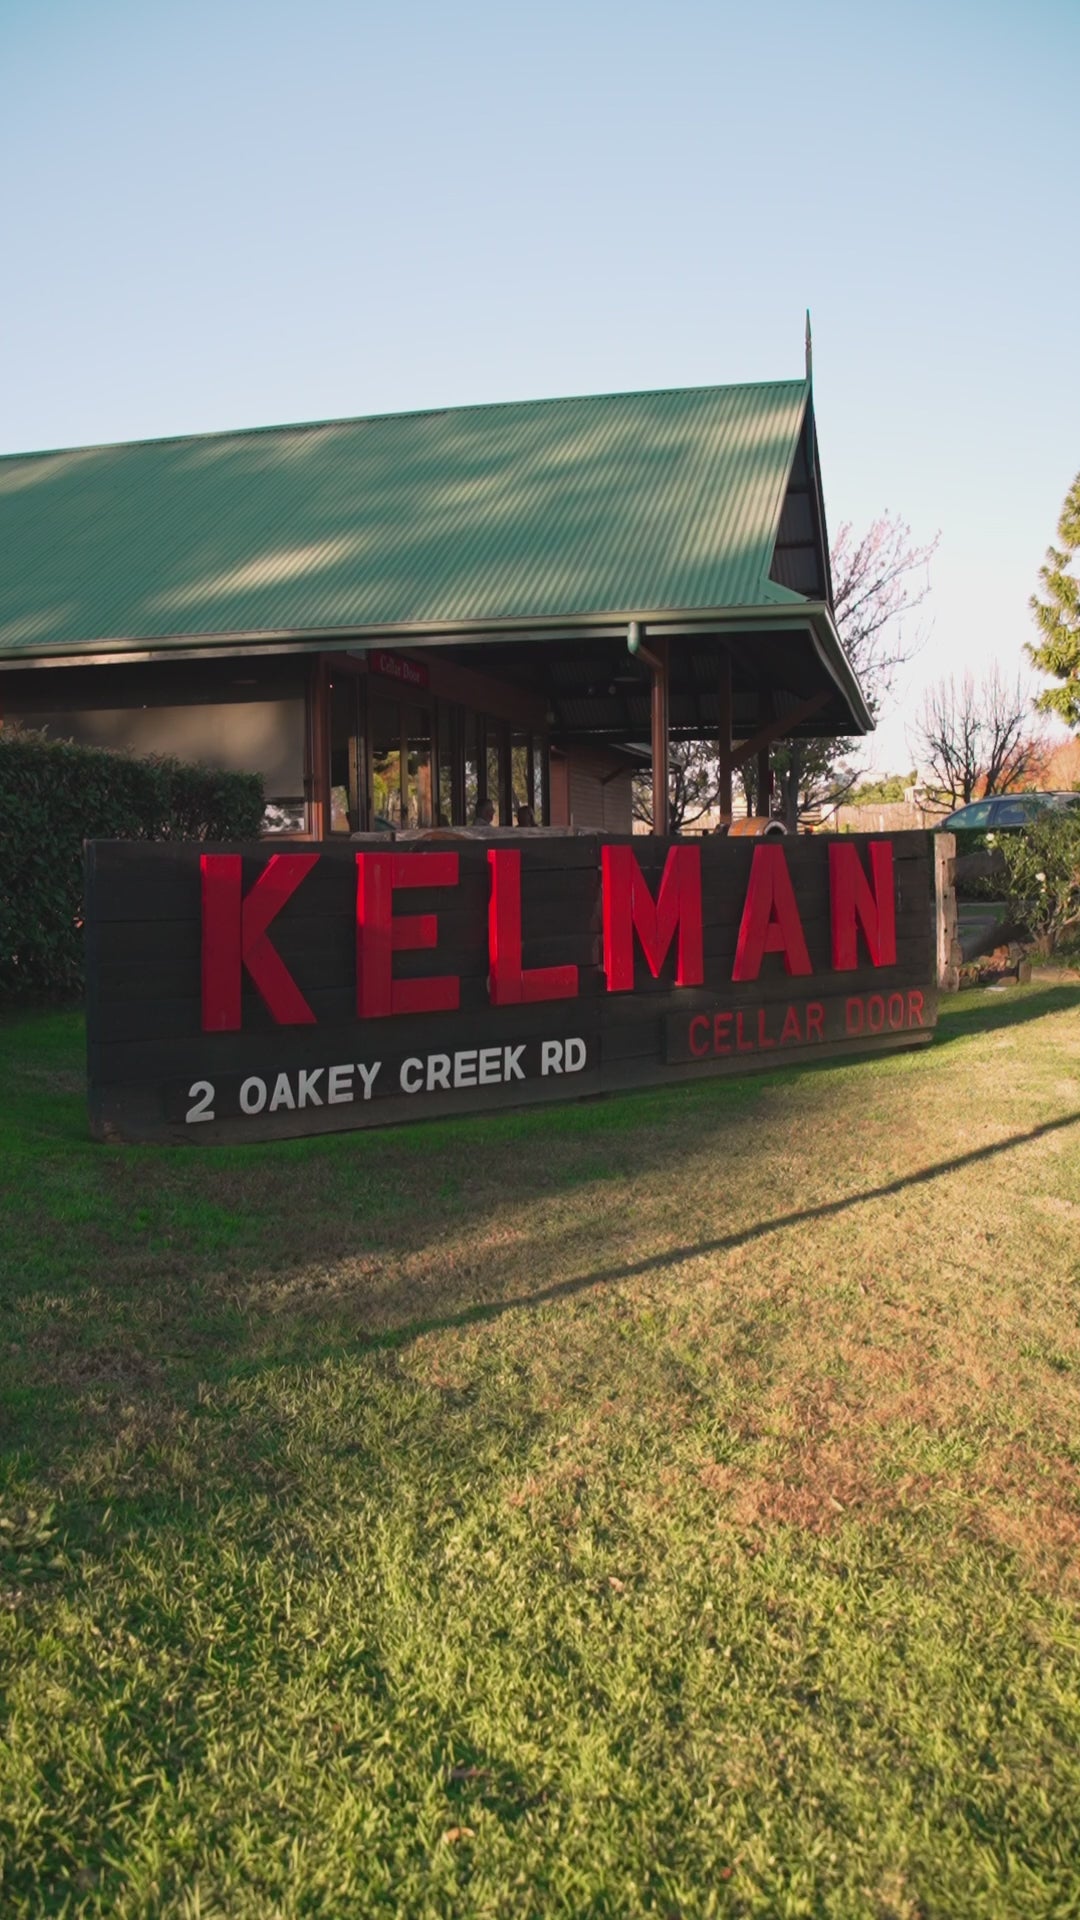 Load video: Welcome to Kelman Vineyard Video